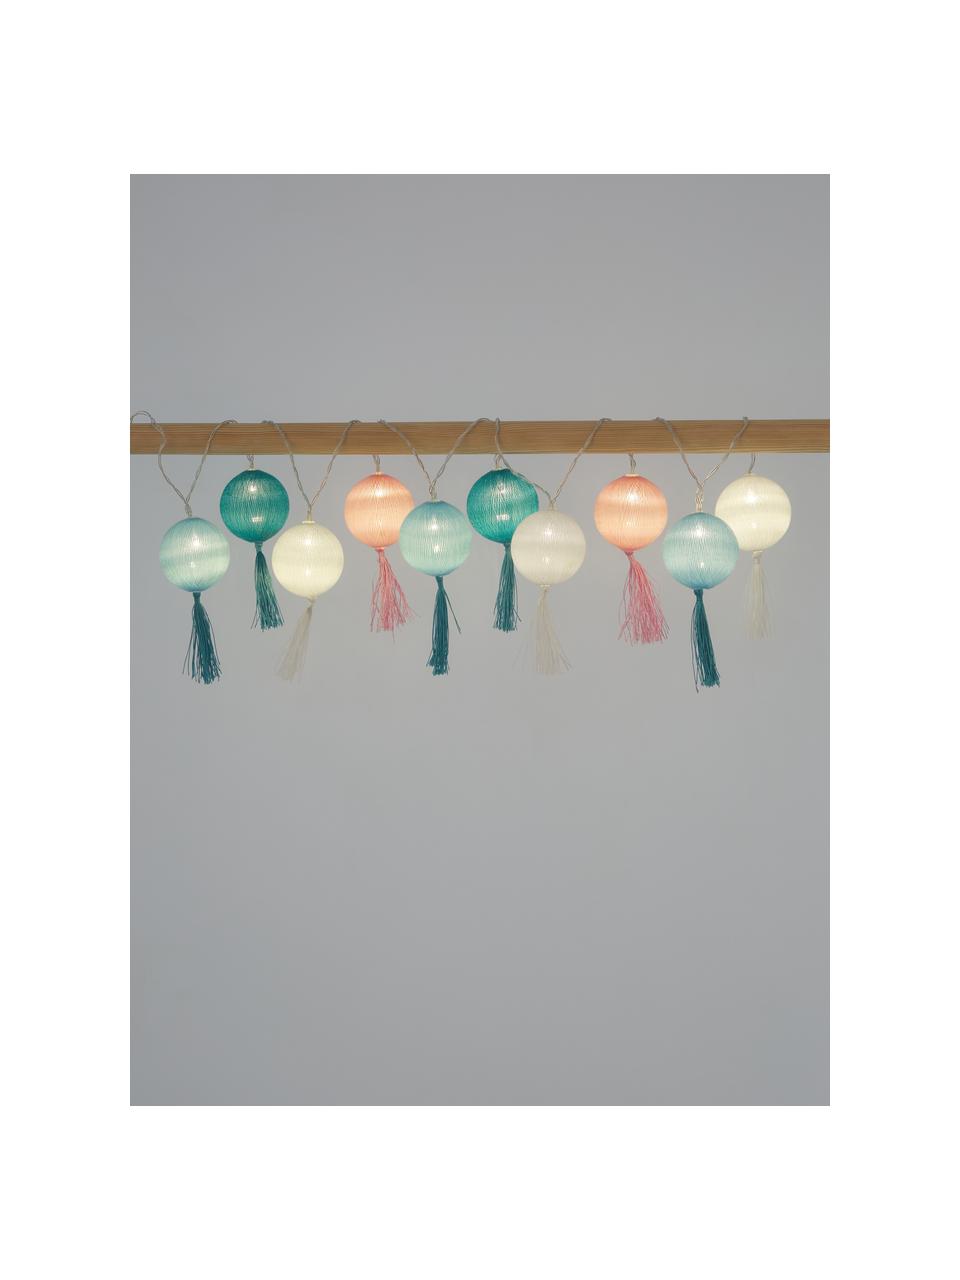 Girlanda świetlna LED Jolly Tassel, 185 cm, Biały, blady różowy, odcienie niebieskiego, D 185 cm, 10 lampionów